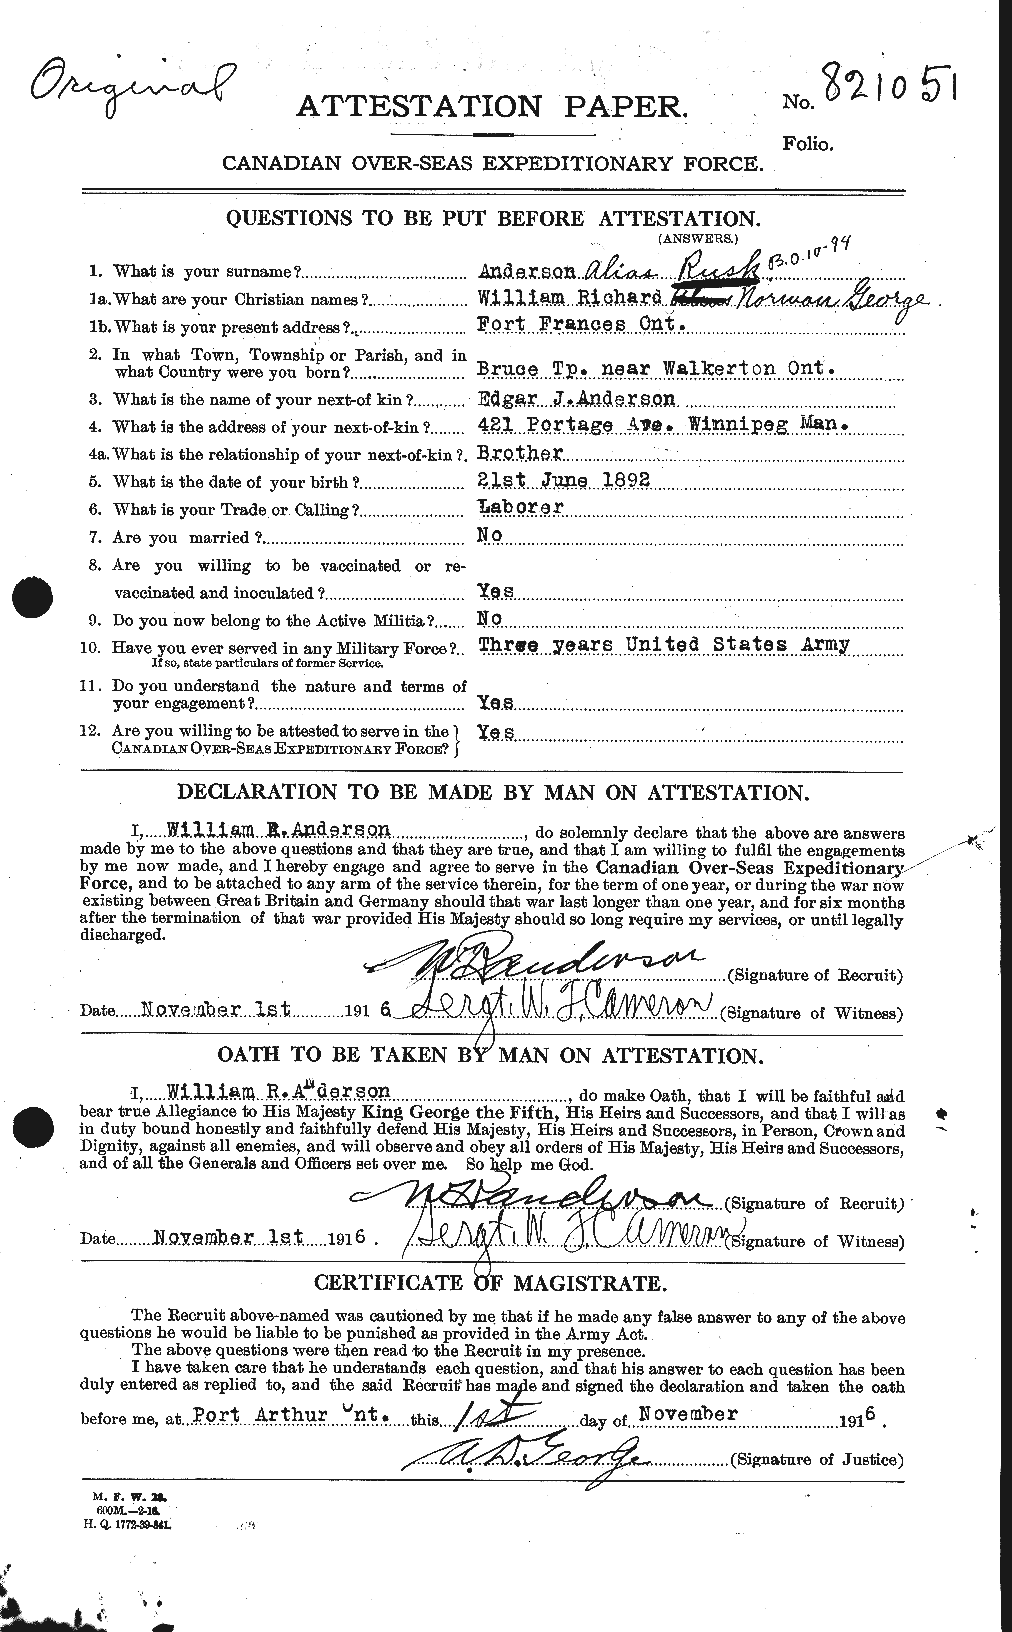 Dossiers du Personnel de la Première Guerre mondiale - CEC 616878a